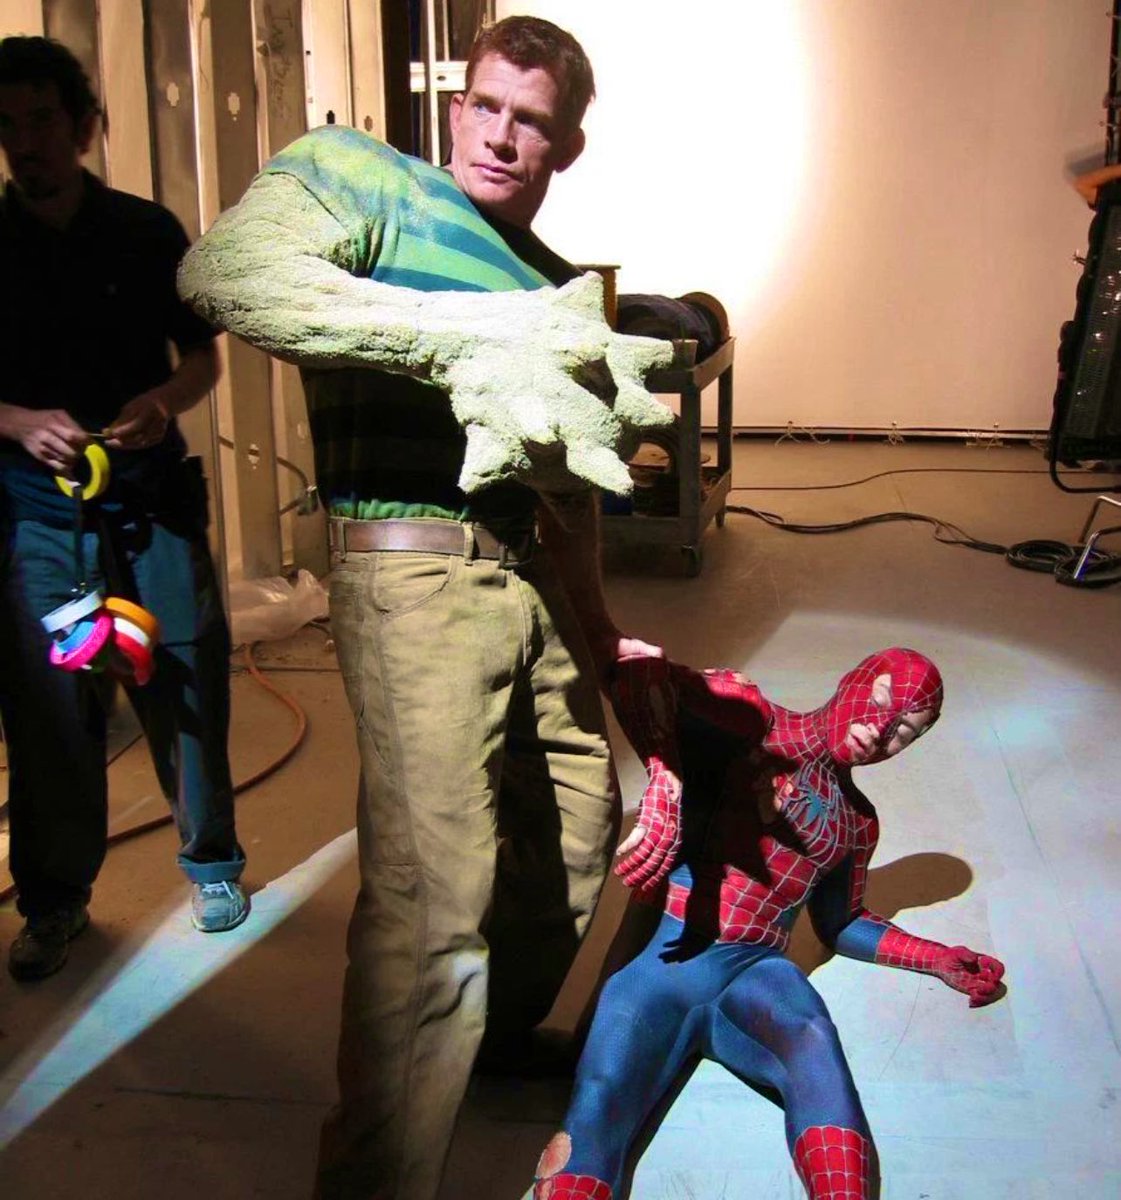 RT @behind_pics: Spider-Man 3 (2007) https://t.co/WkxLDoSBty